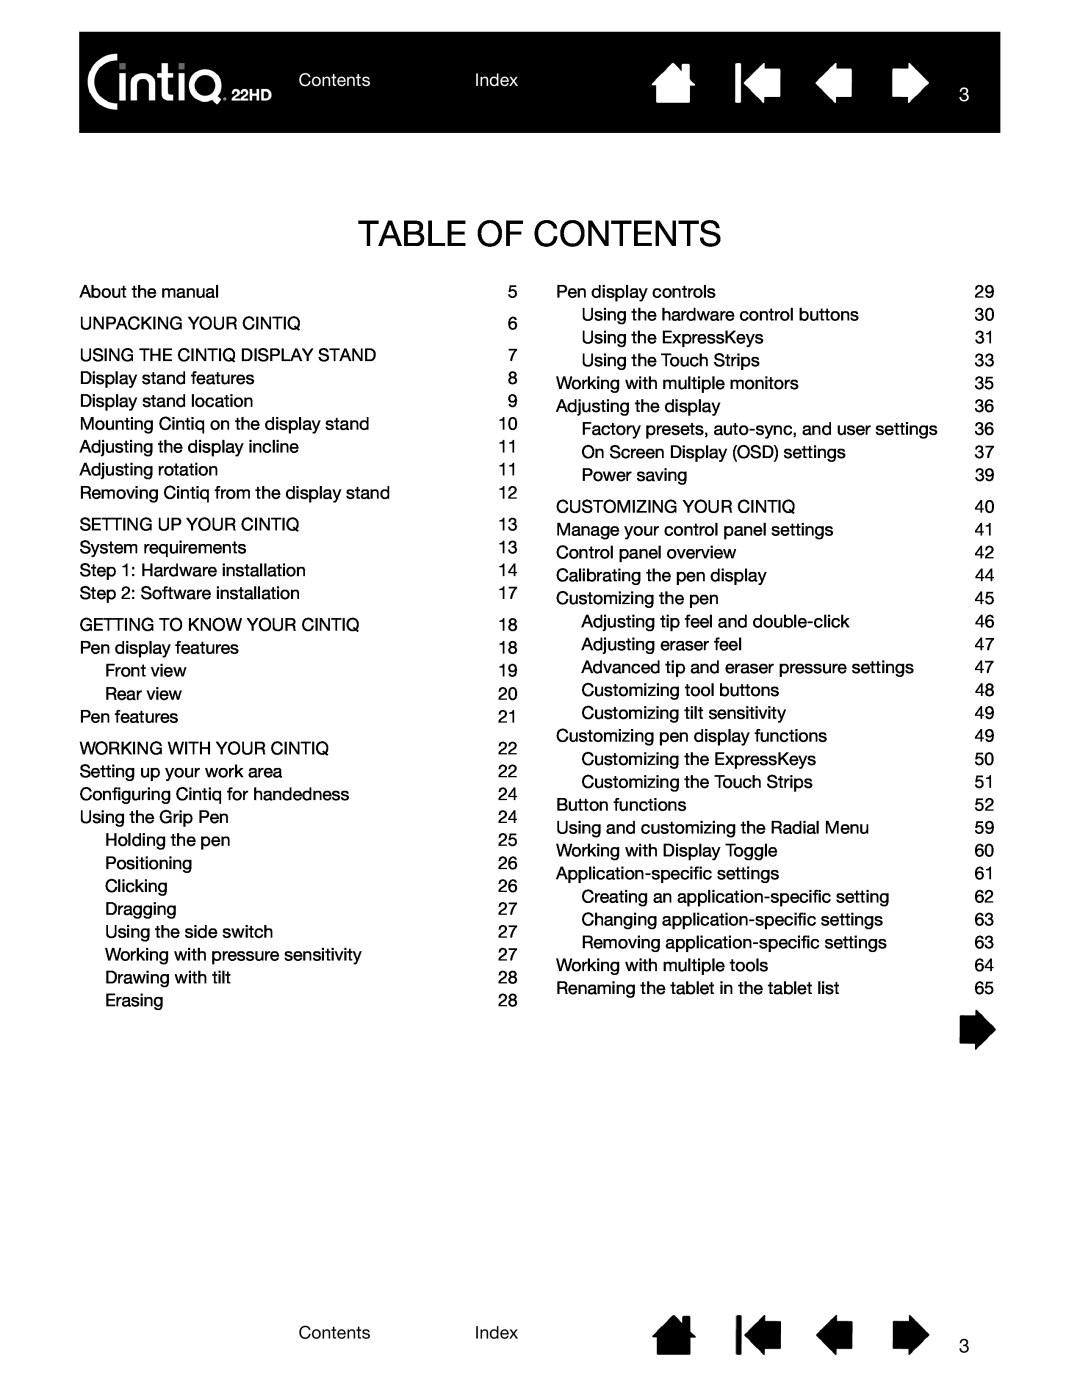 Wacom DTK-2200 user manual Table Of Contents, ContentsIndex 